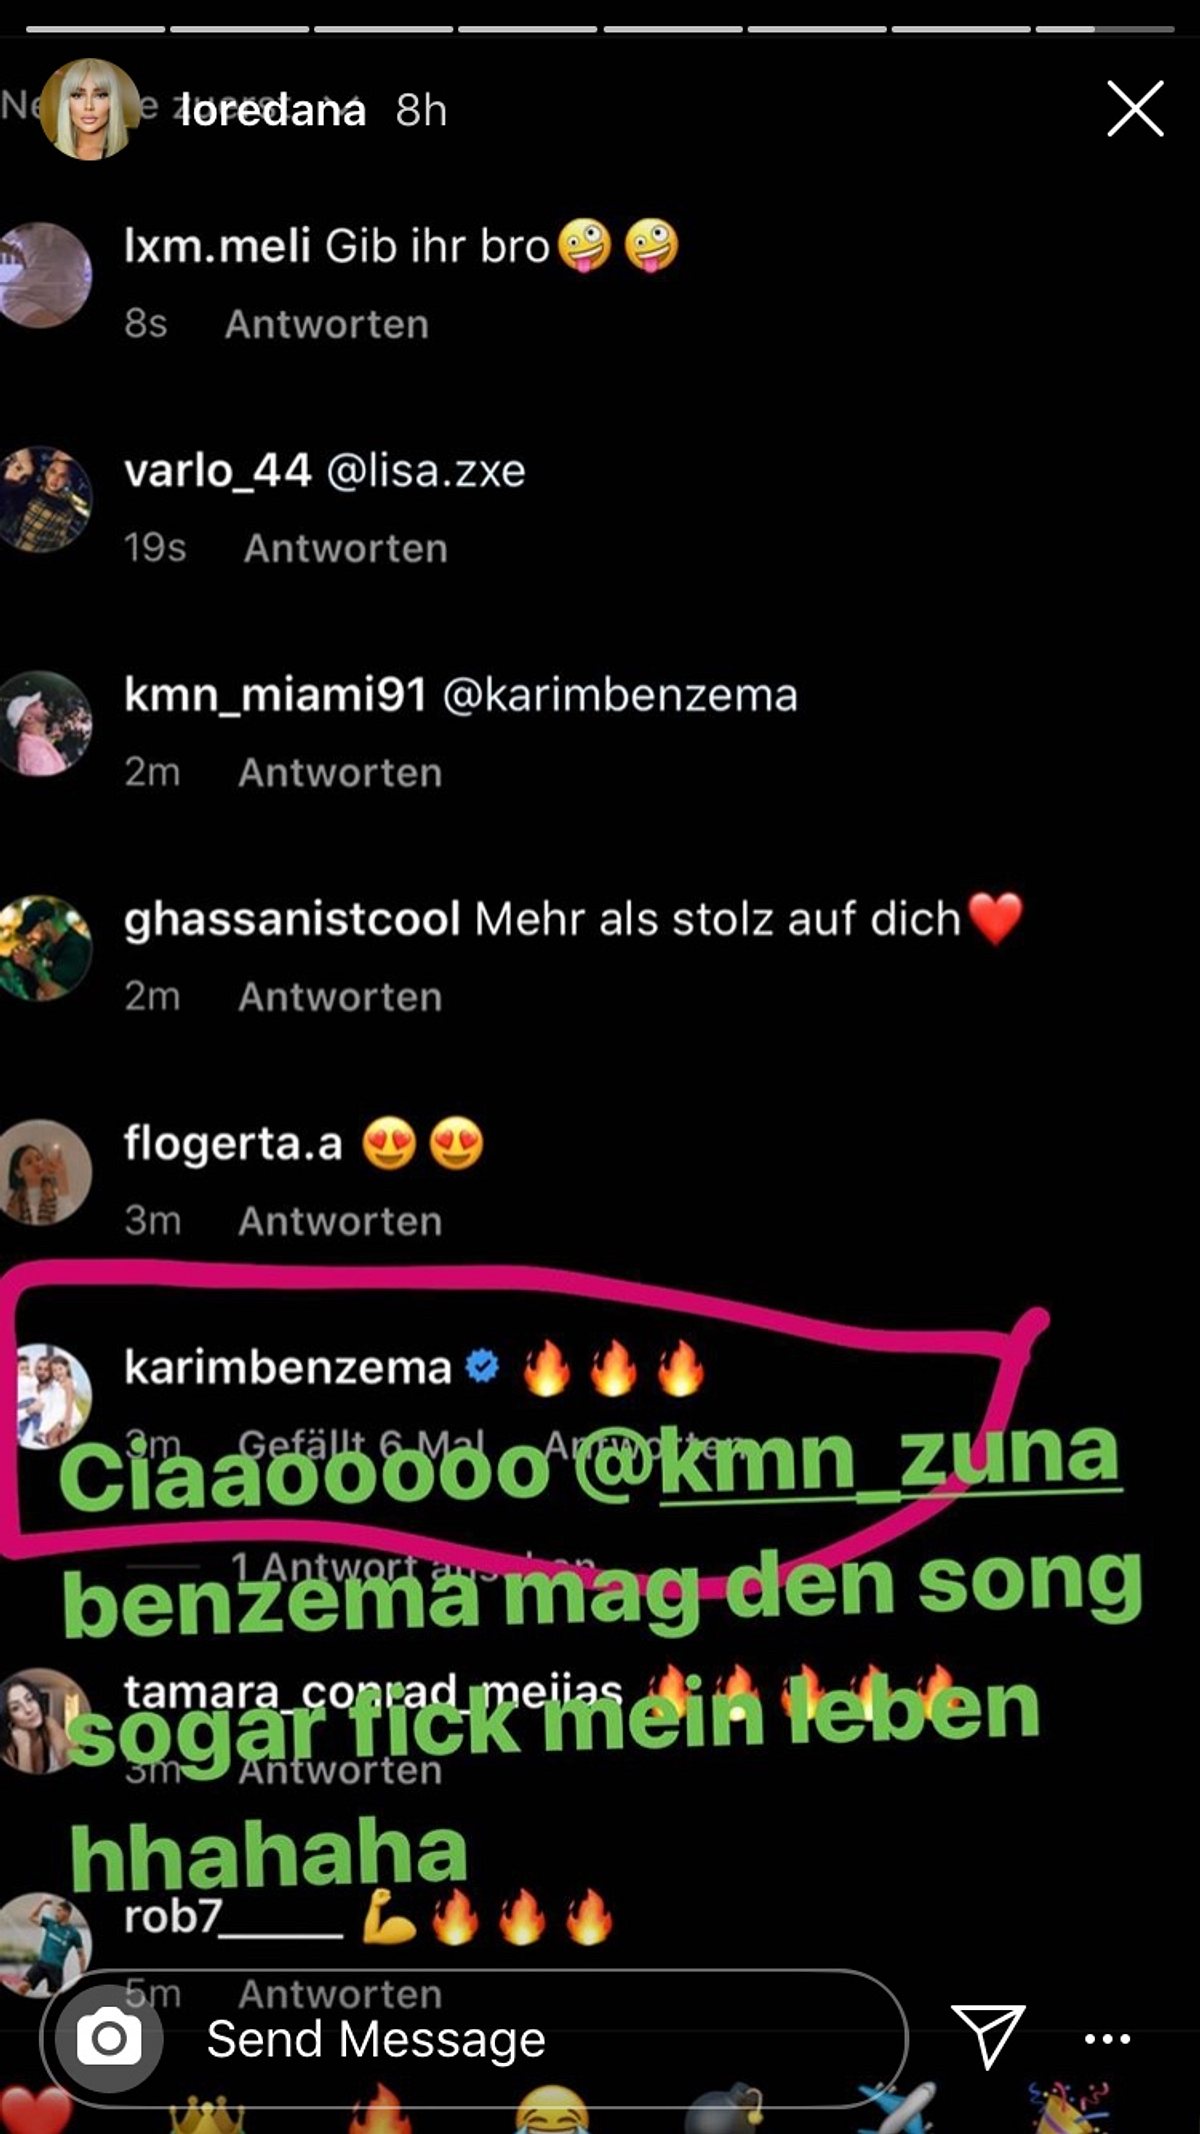 Fußball-Megastar Karim Benzema feiert Song von Zuna